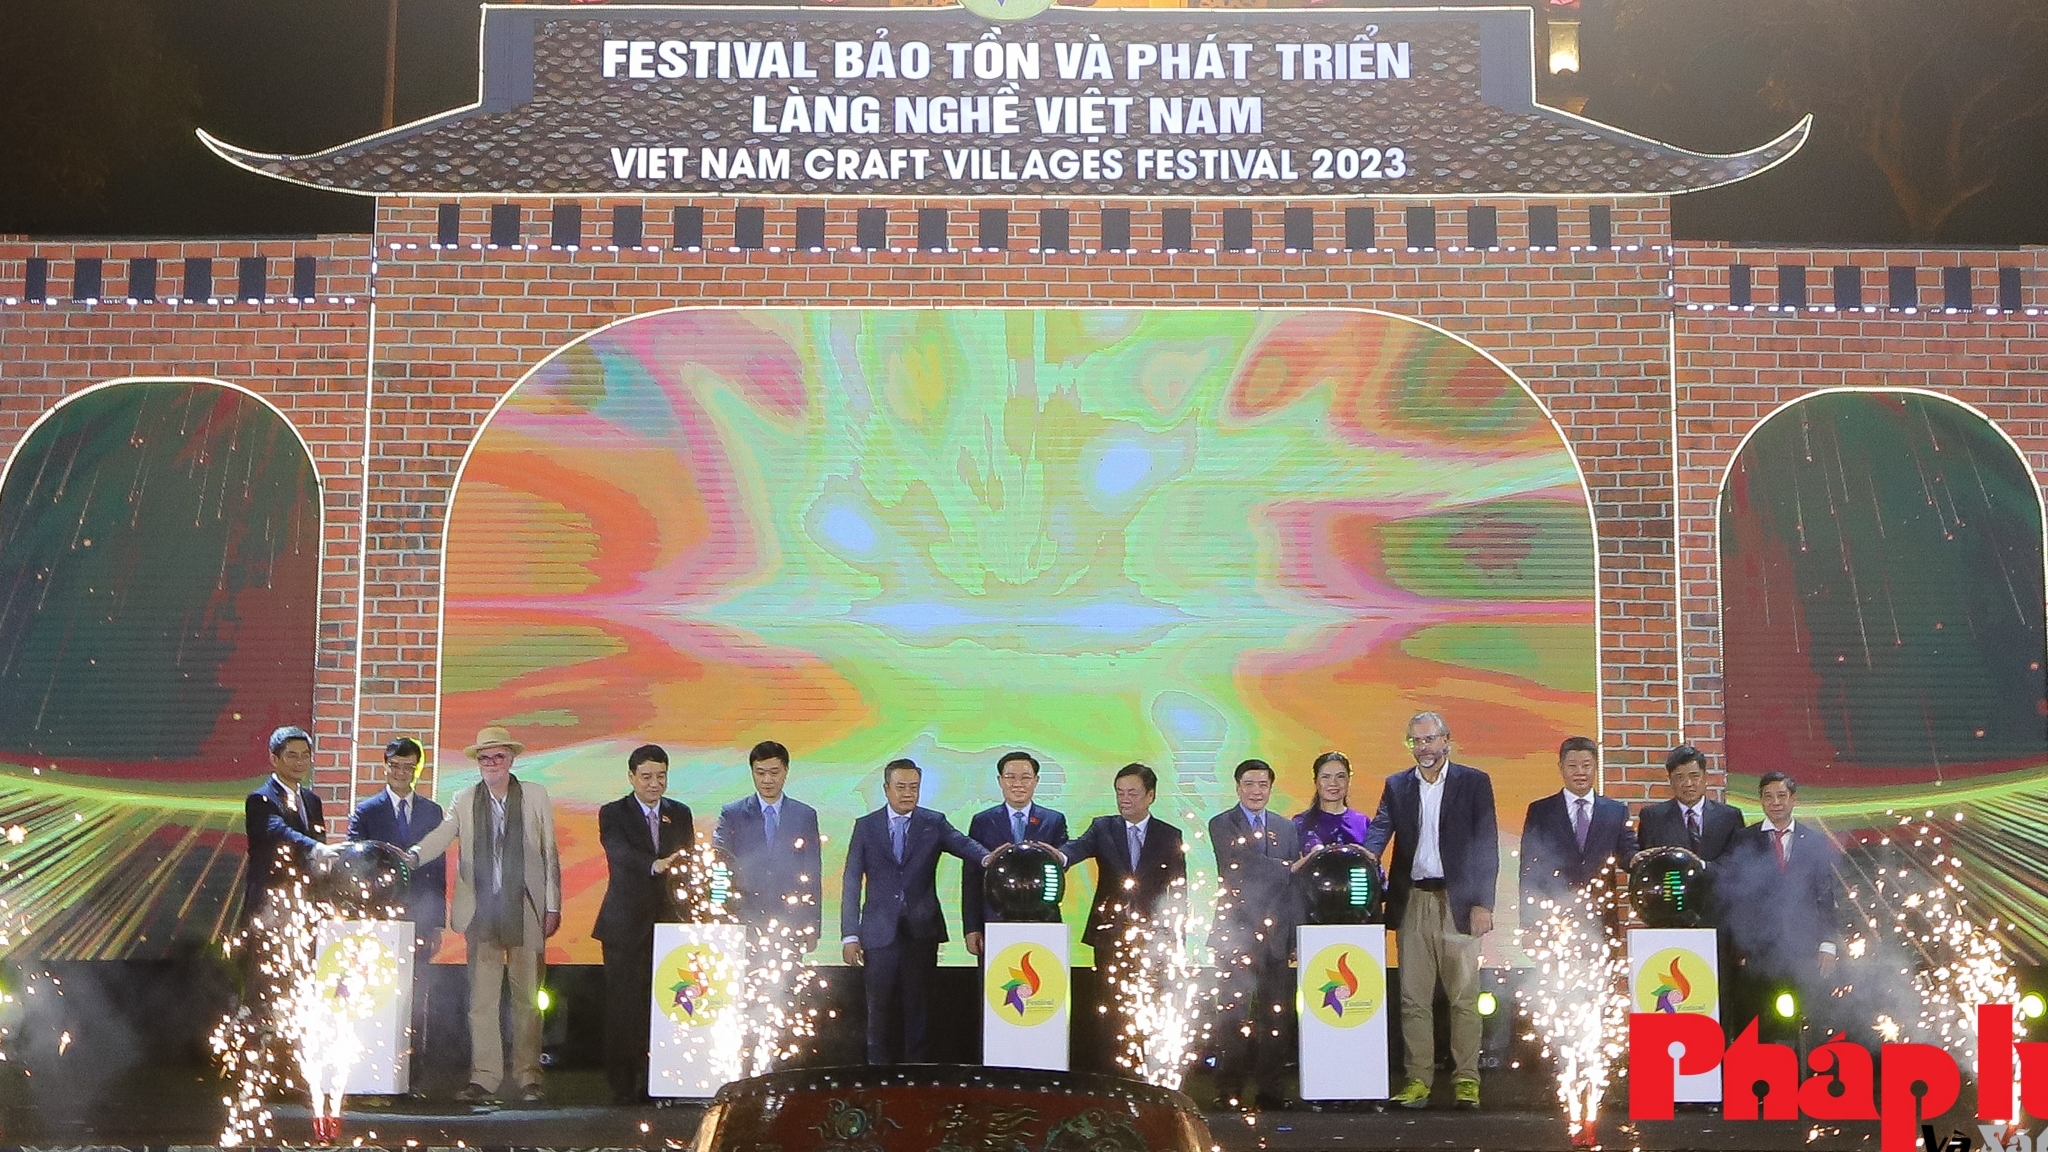 Toàn cảnh khai mạc Festival bảo tồn và phát triển làng nghề Việt Nam năm 2023